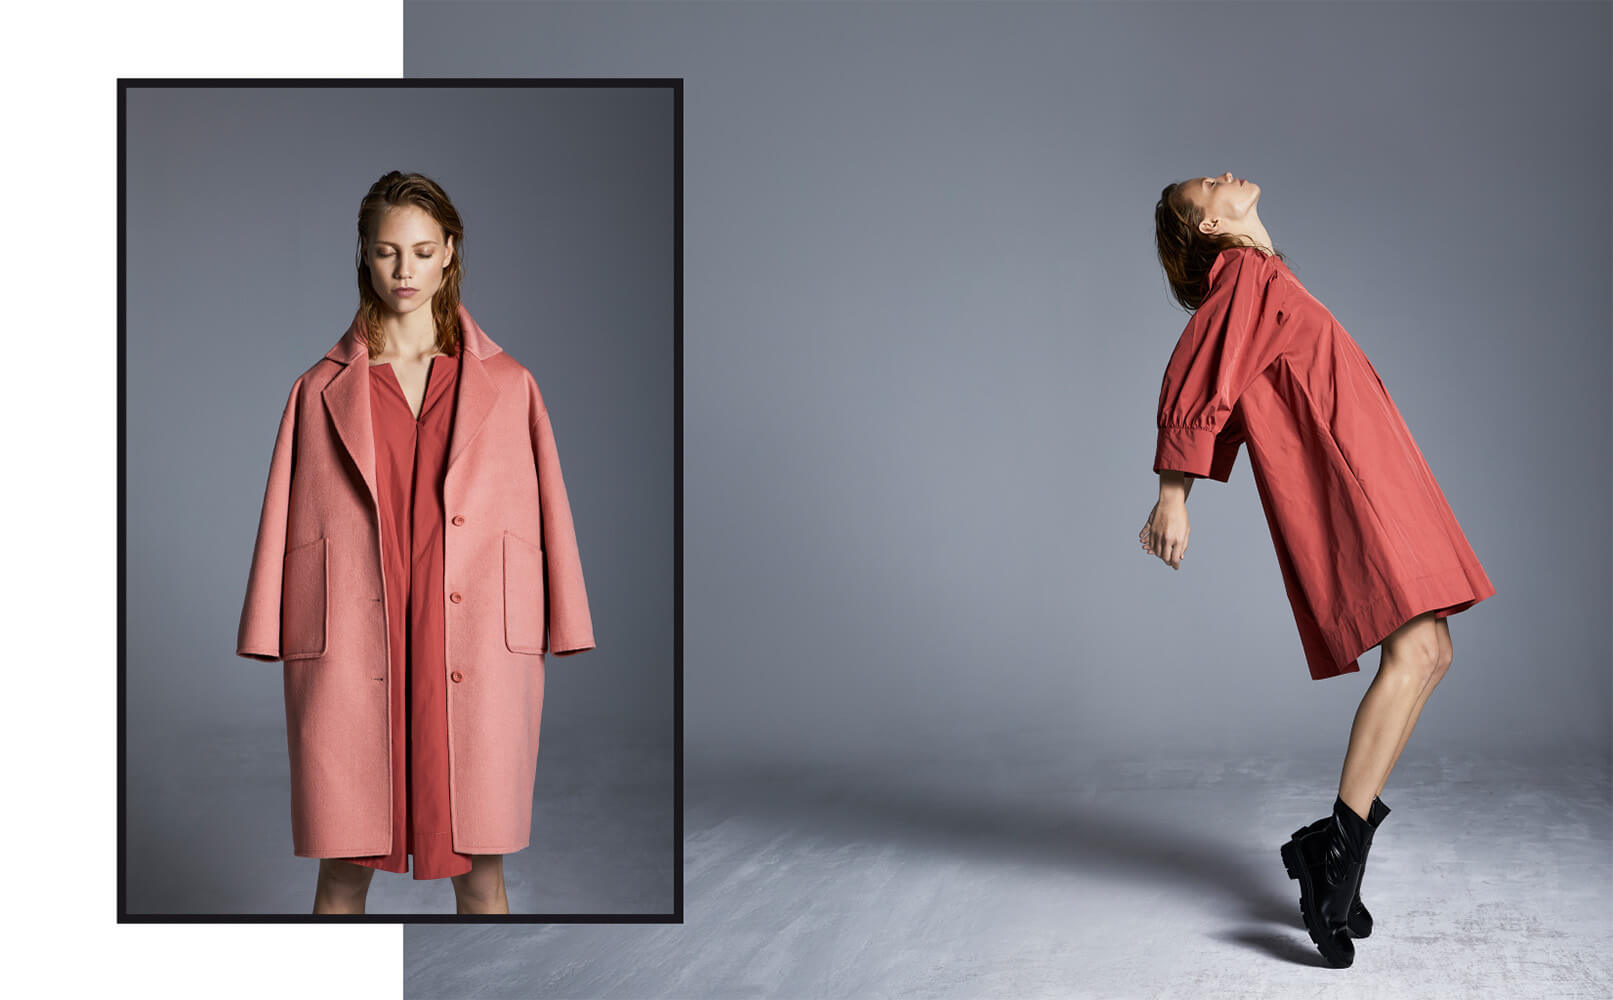 Angel-Ruiz-Ruiz-Angel-Ruiz-Ruiz-Photographer-Campaign-FW-2021-VAN-DOS-Coat-Pink-cotton-dress-Red-1613x1000